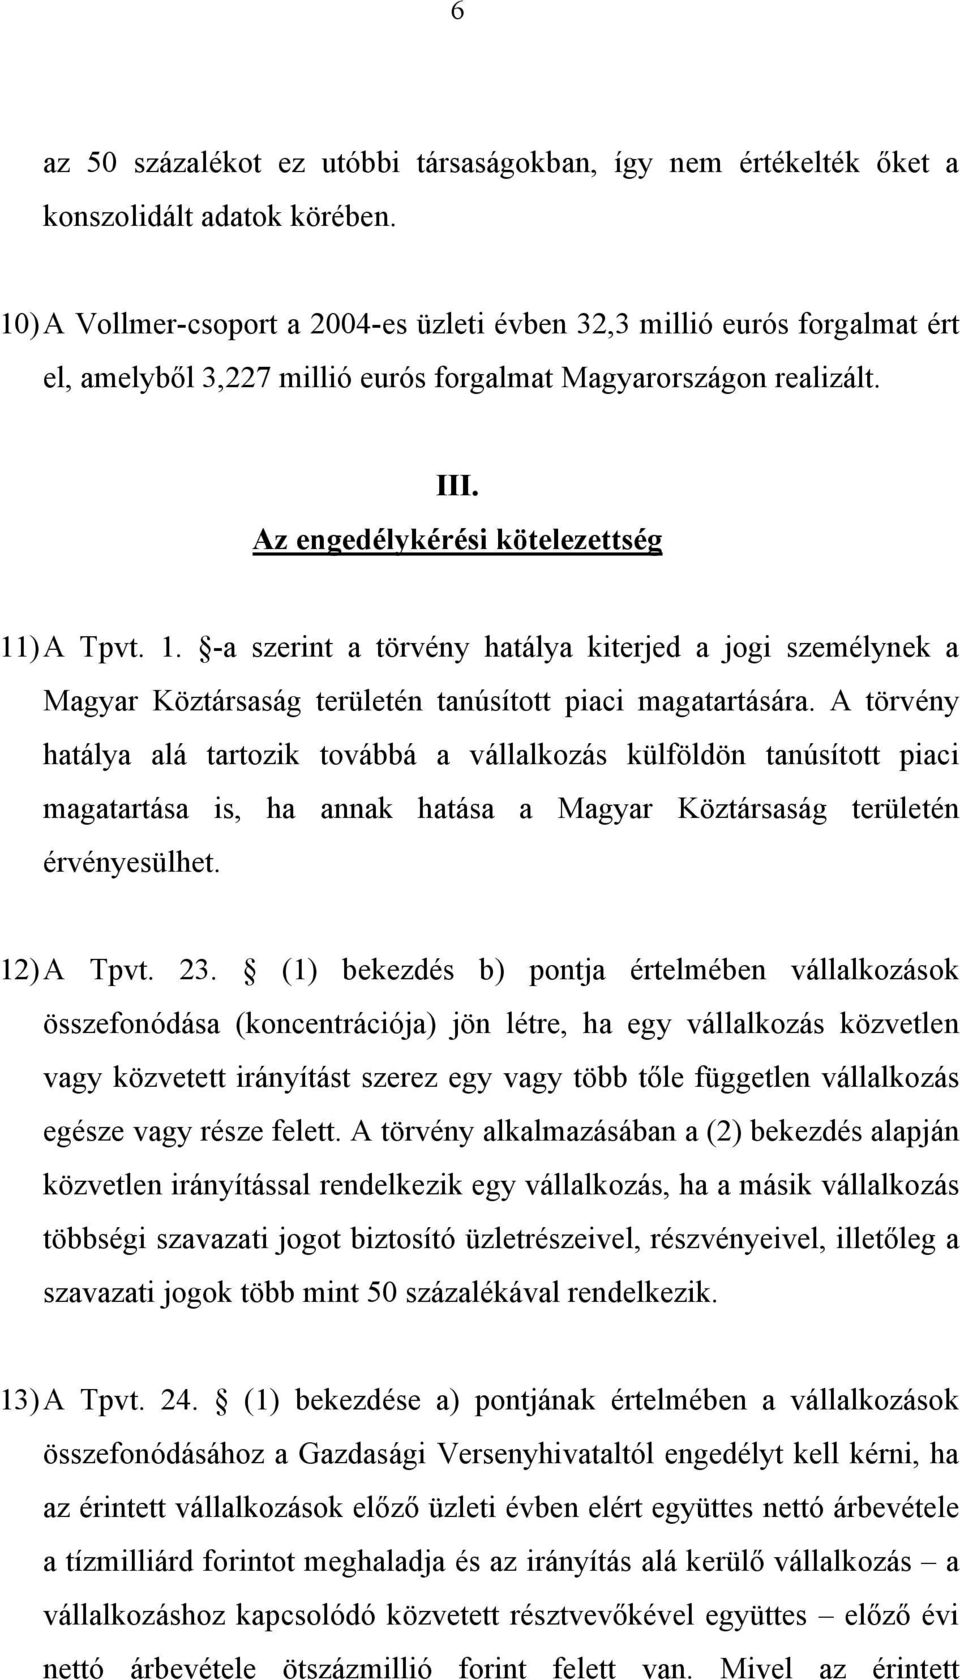 ) A Tpvt. 1. -a szerint a törvény hatálya kiterjed a jogi személynek a Magyar Köztársaság területén tanúsított piaci magatartására.